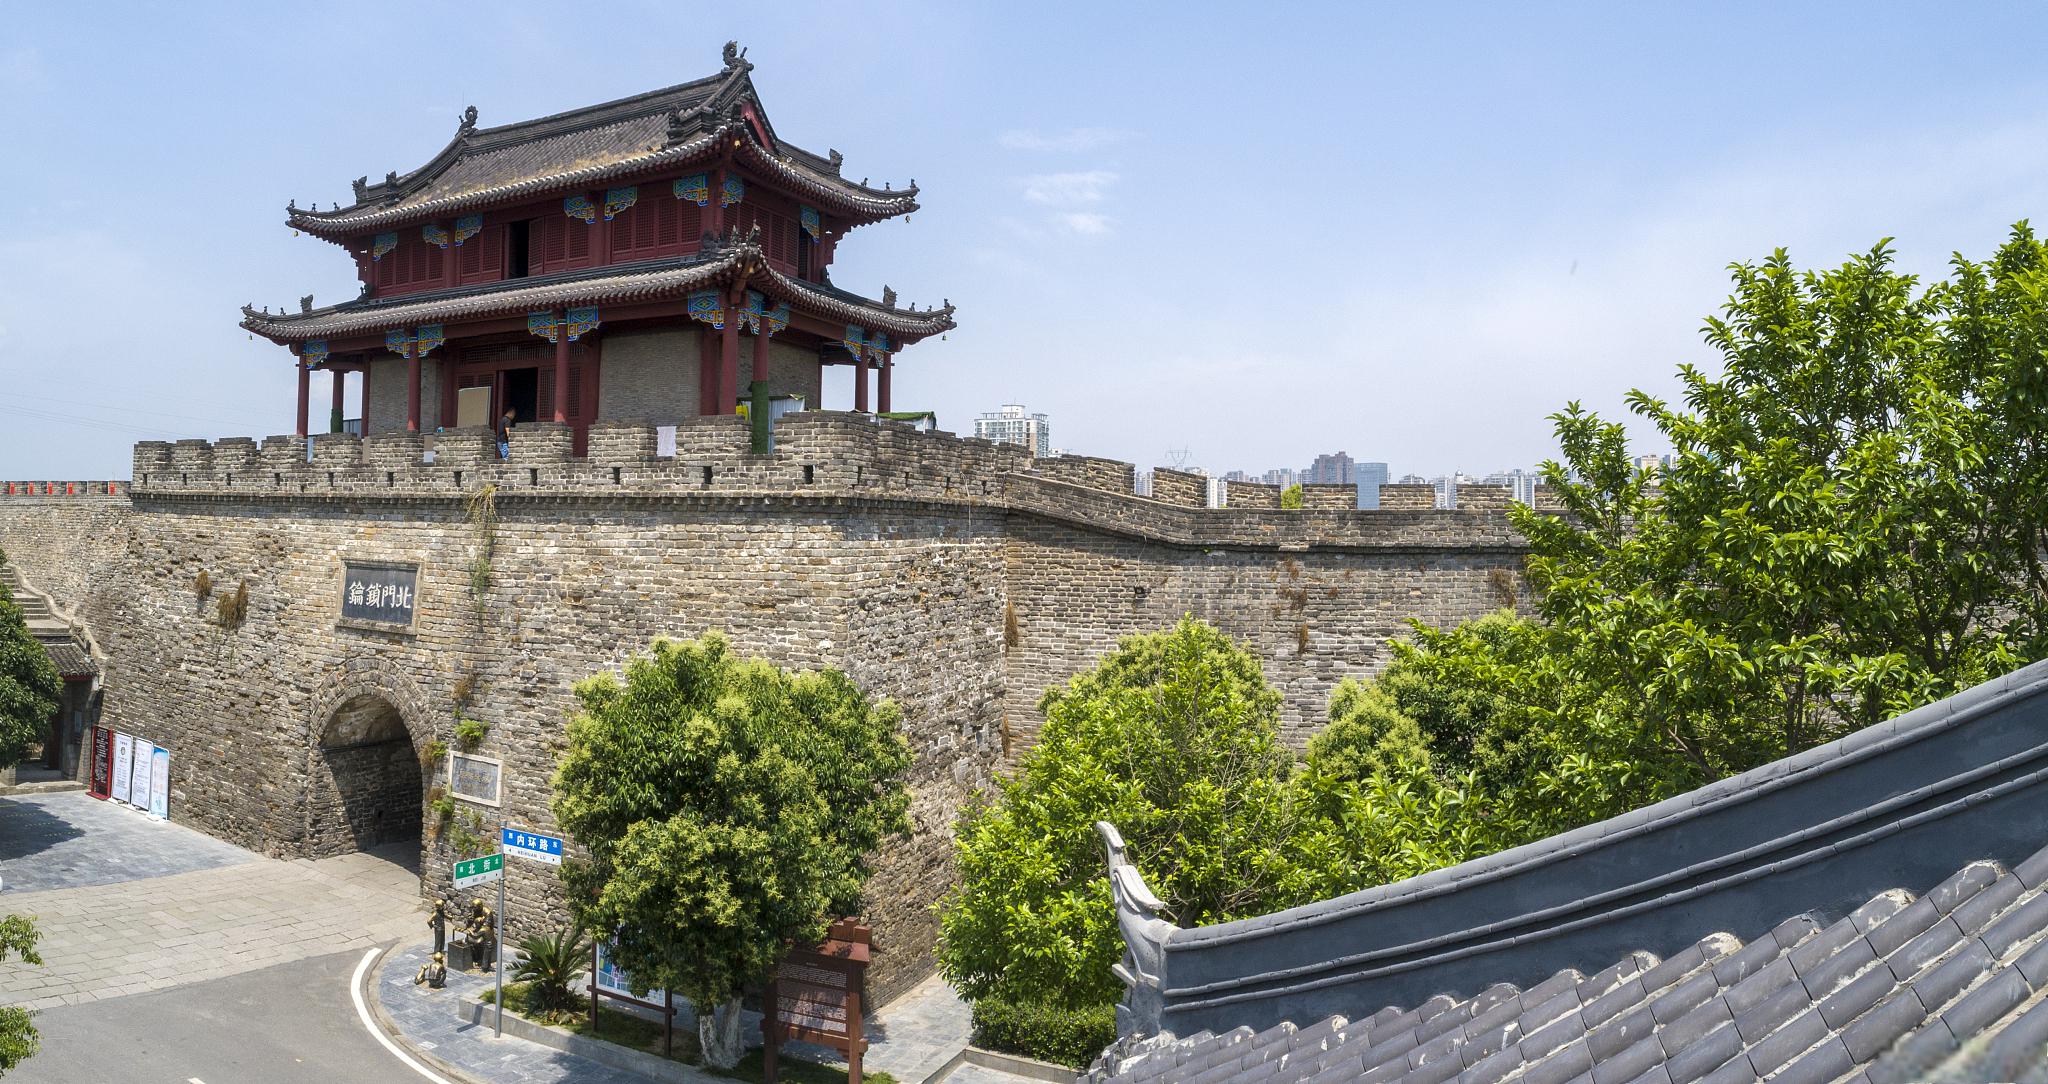 荆州市旅游攻略 荆州市是湖北省的一个历史文化名城,拥有丰富的旅游